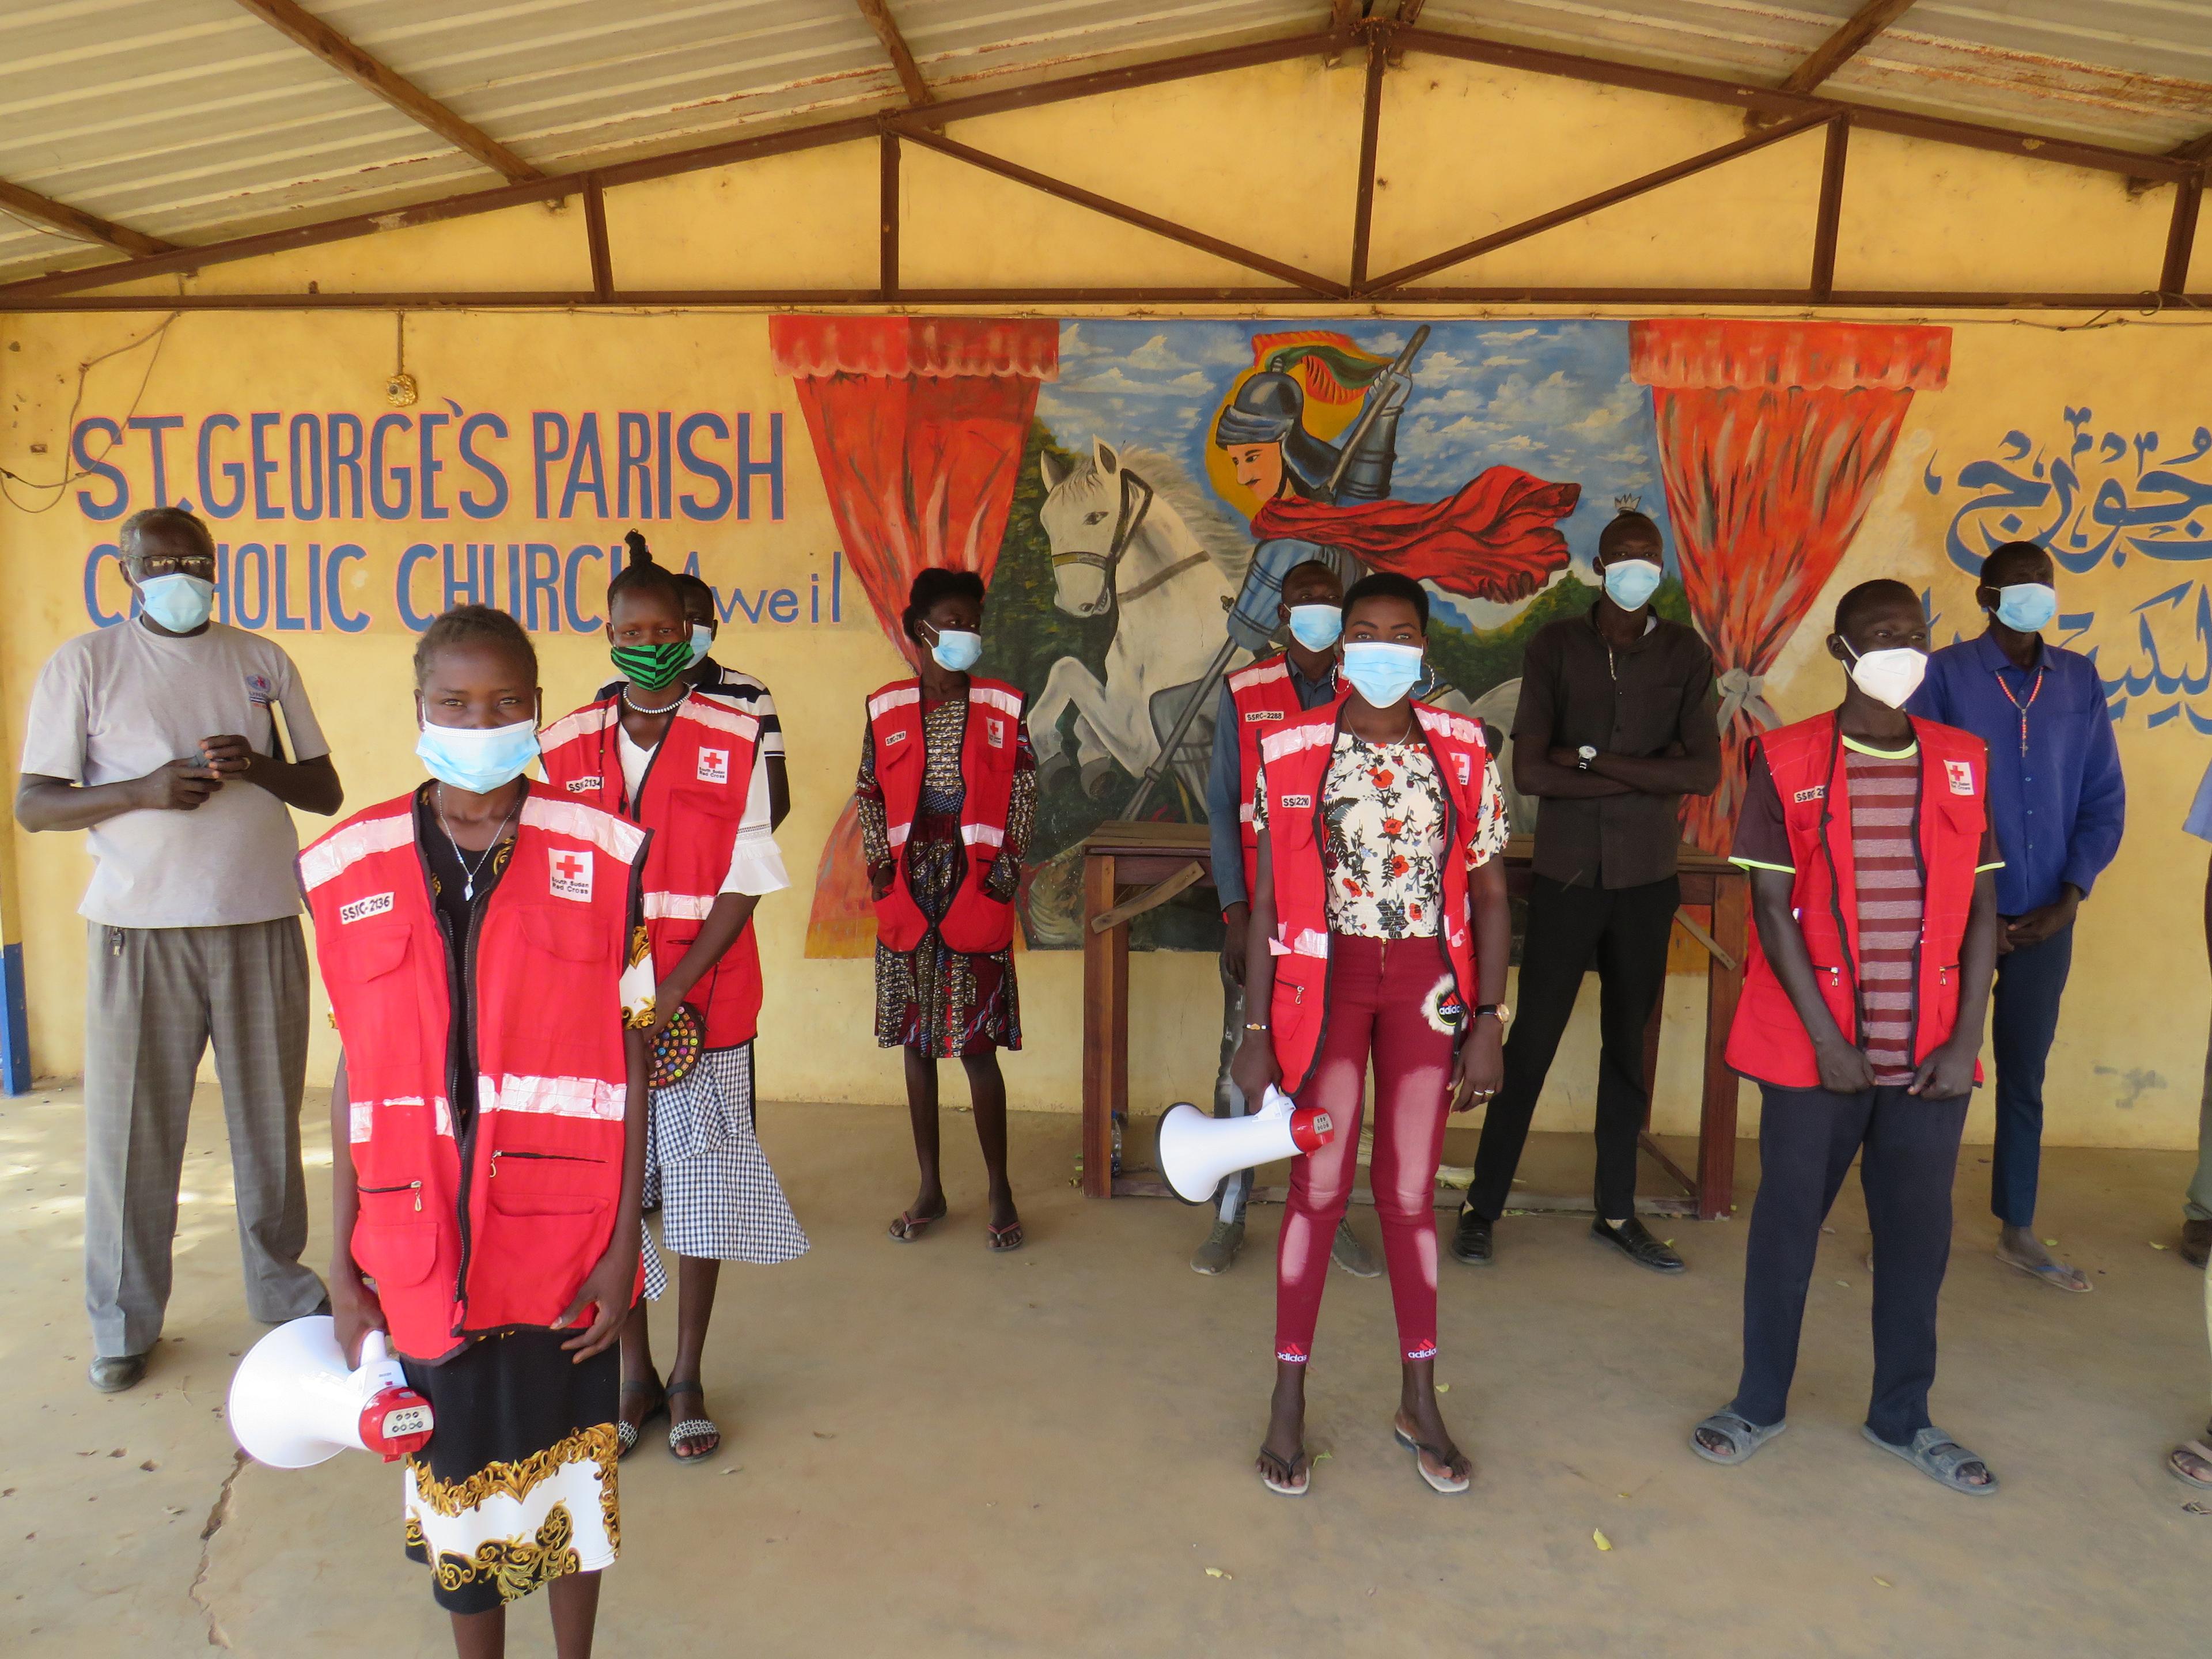 A l’intérieur d’un bâtiment, des bénévoles de la Croix-Rouge se tiennent debout, à distance les uns des autres, et regardent l’objectif. Six portent un gilet rouge orné de l’emblème de la Croix-Rouge.